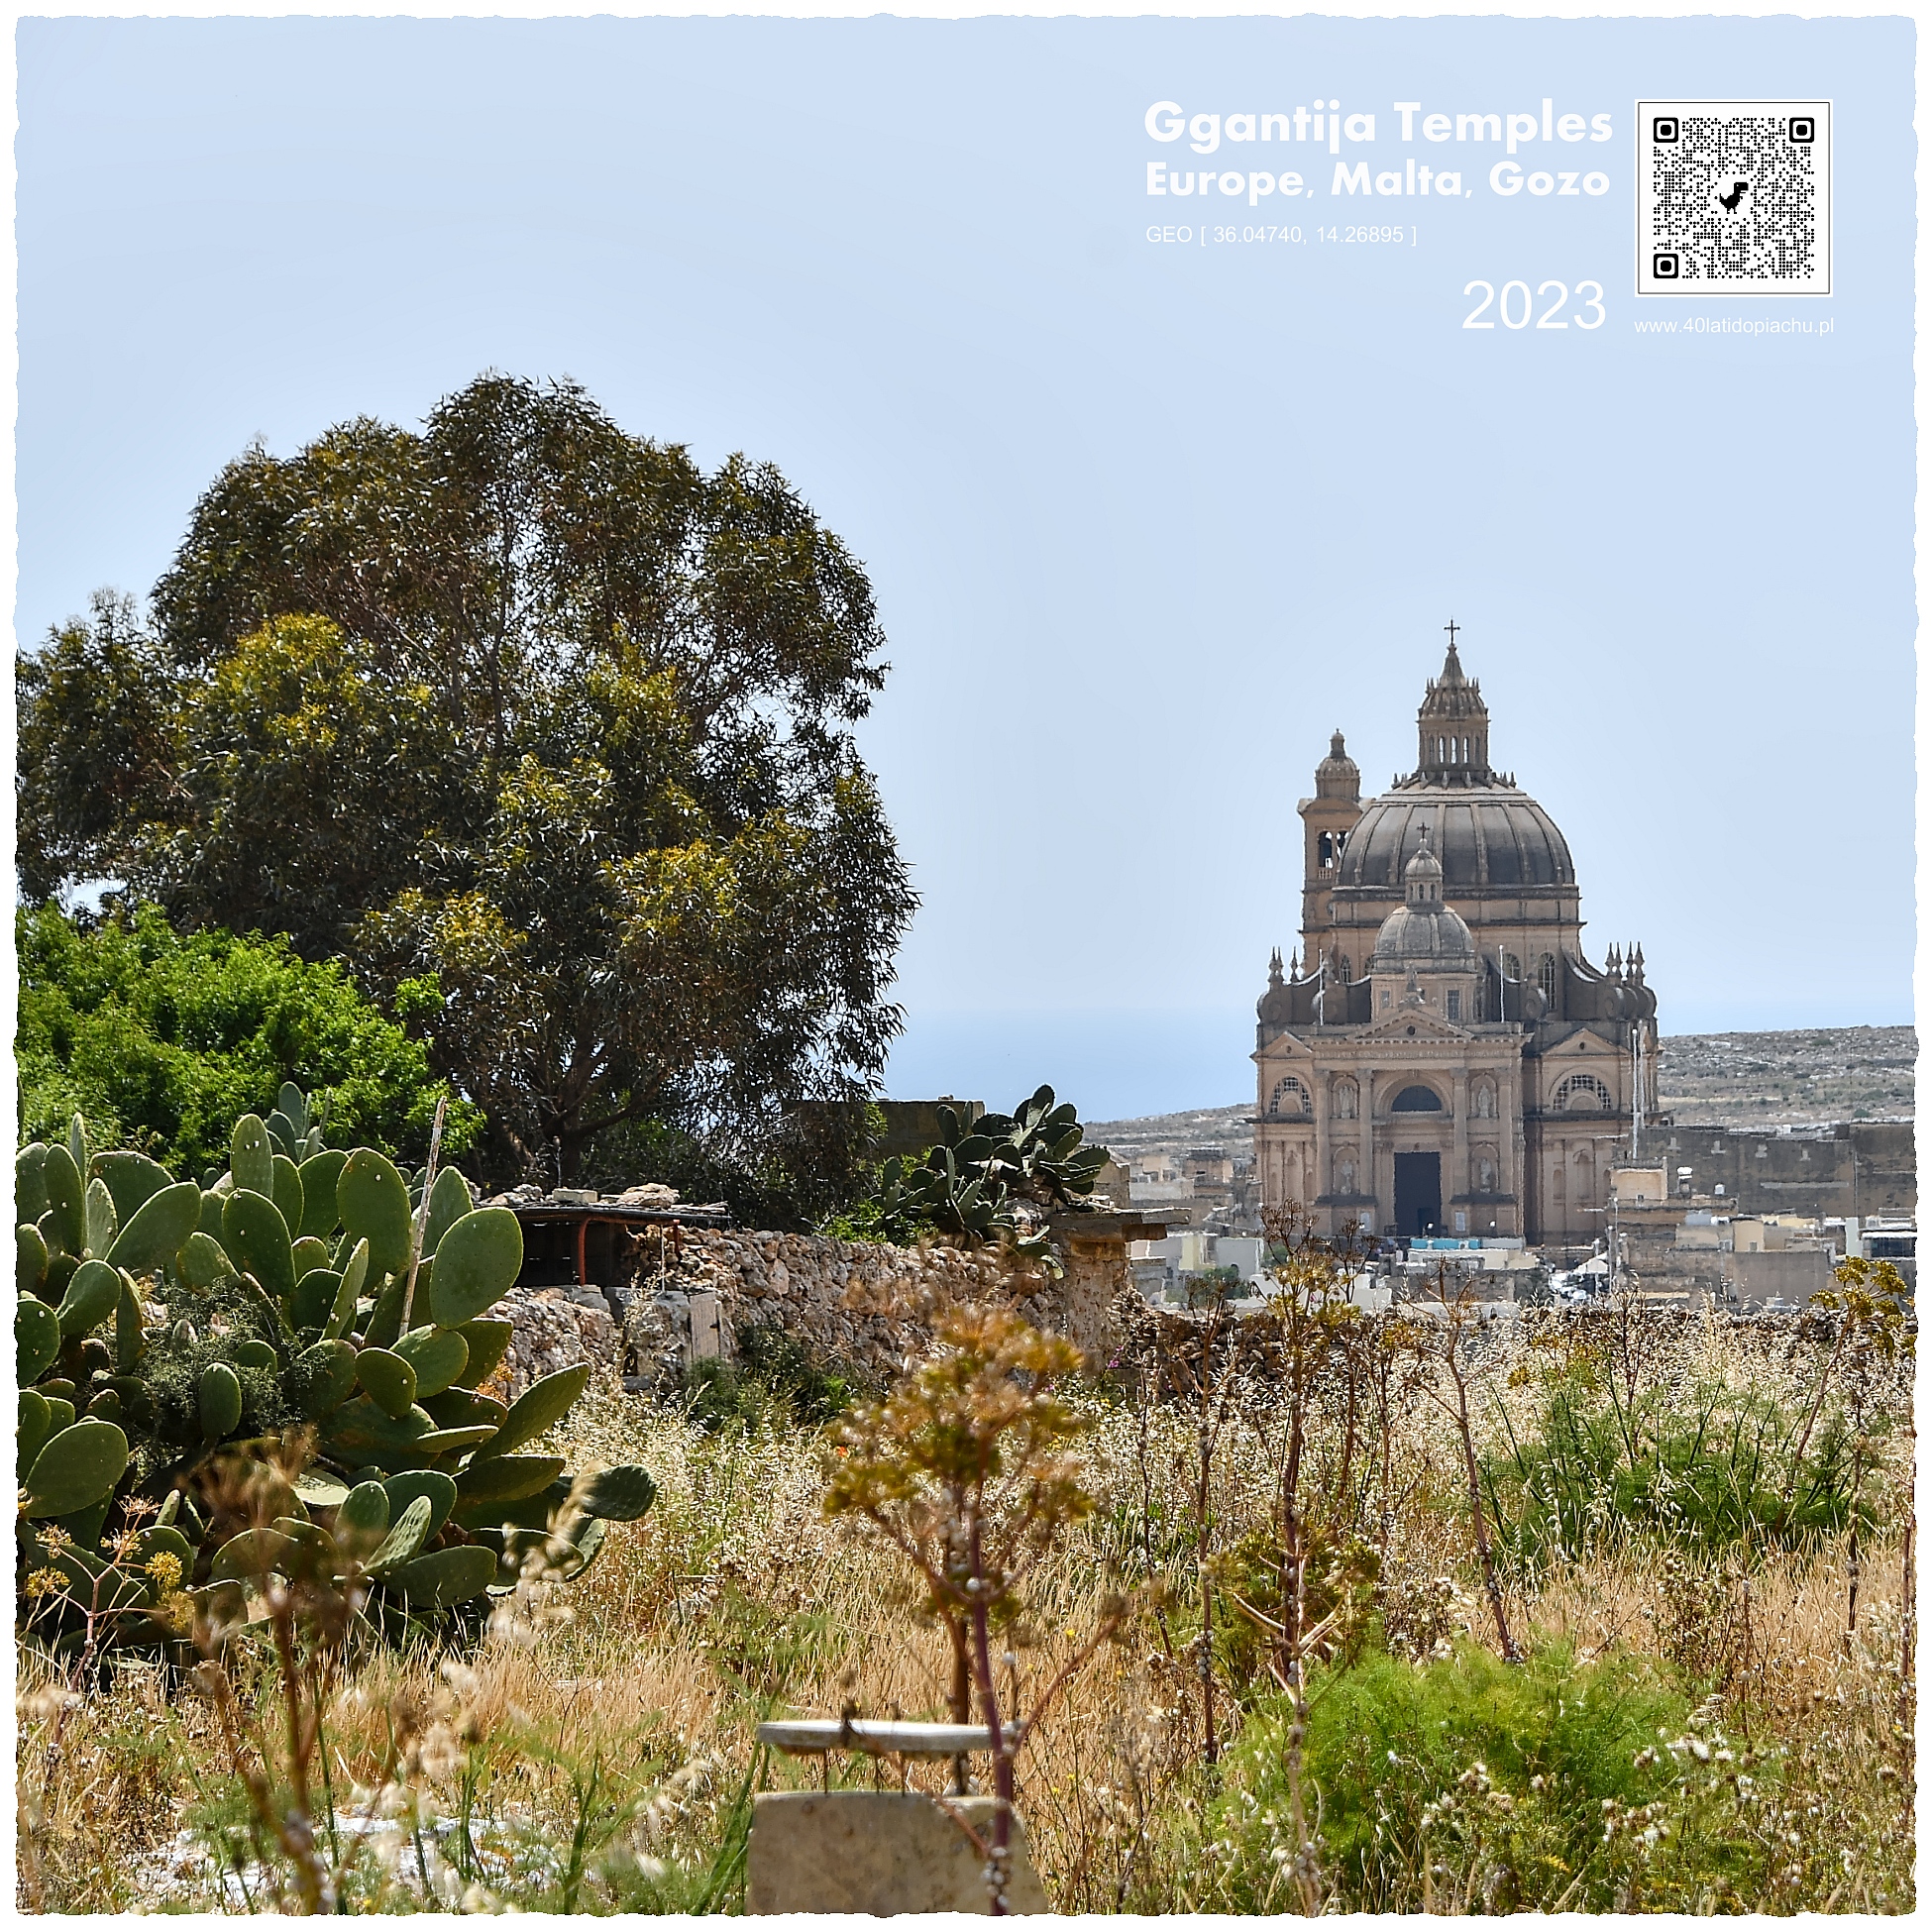 Malta i Gozo: megalityczna świątynia Santa Verna